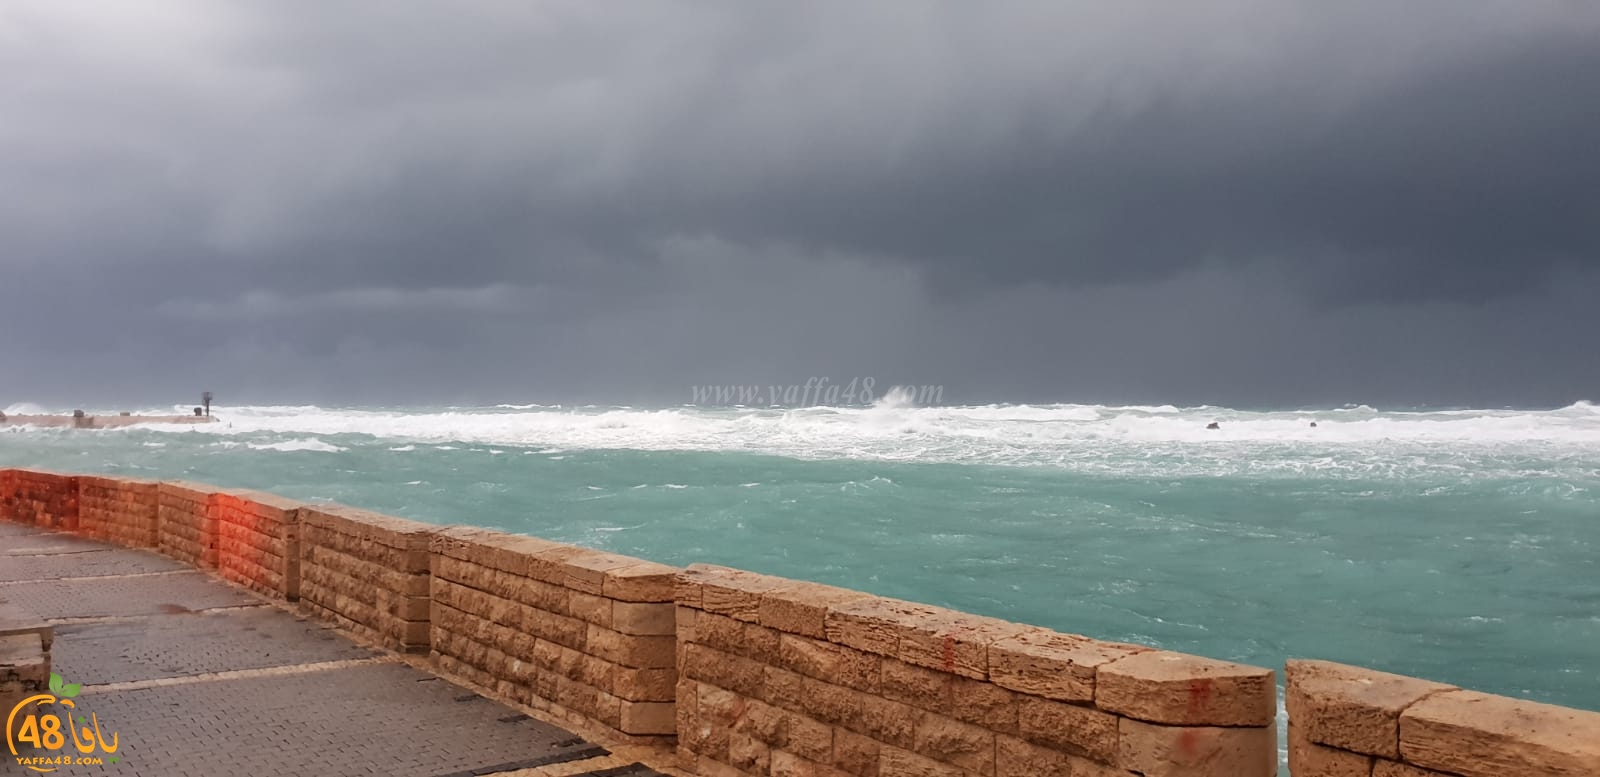 فيديو وصور: عين على العاصفة القطبية من مدينتي يافا واللد 